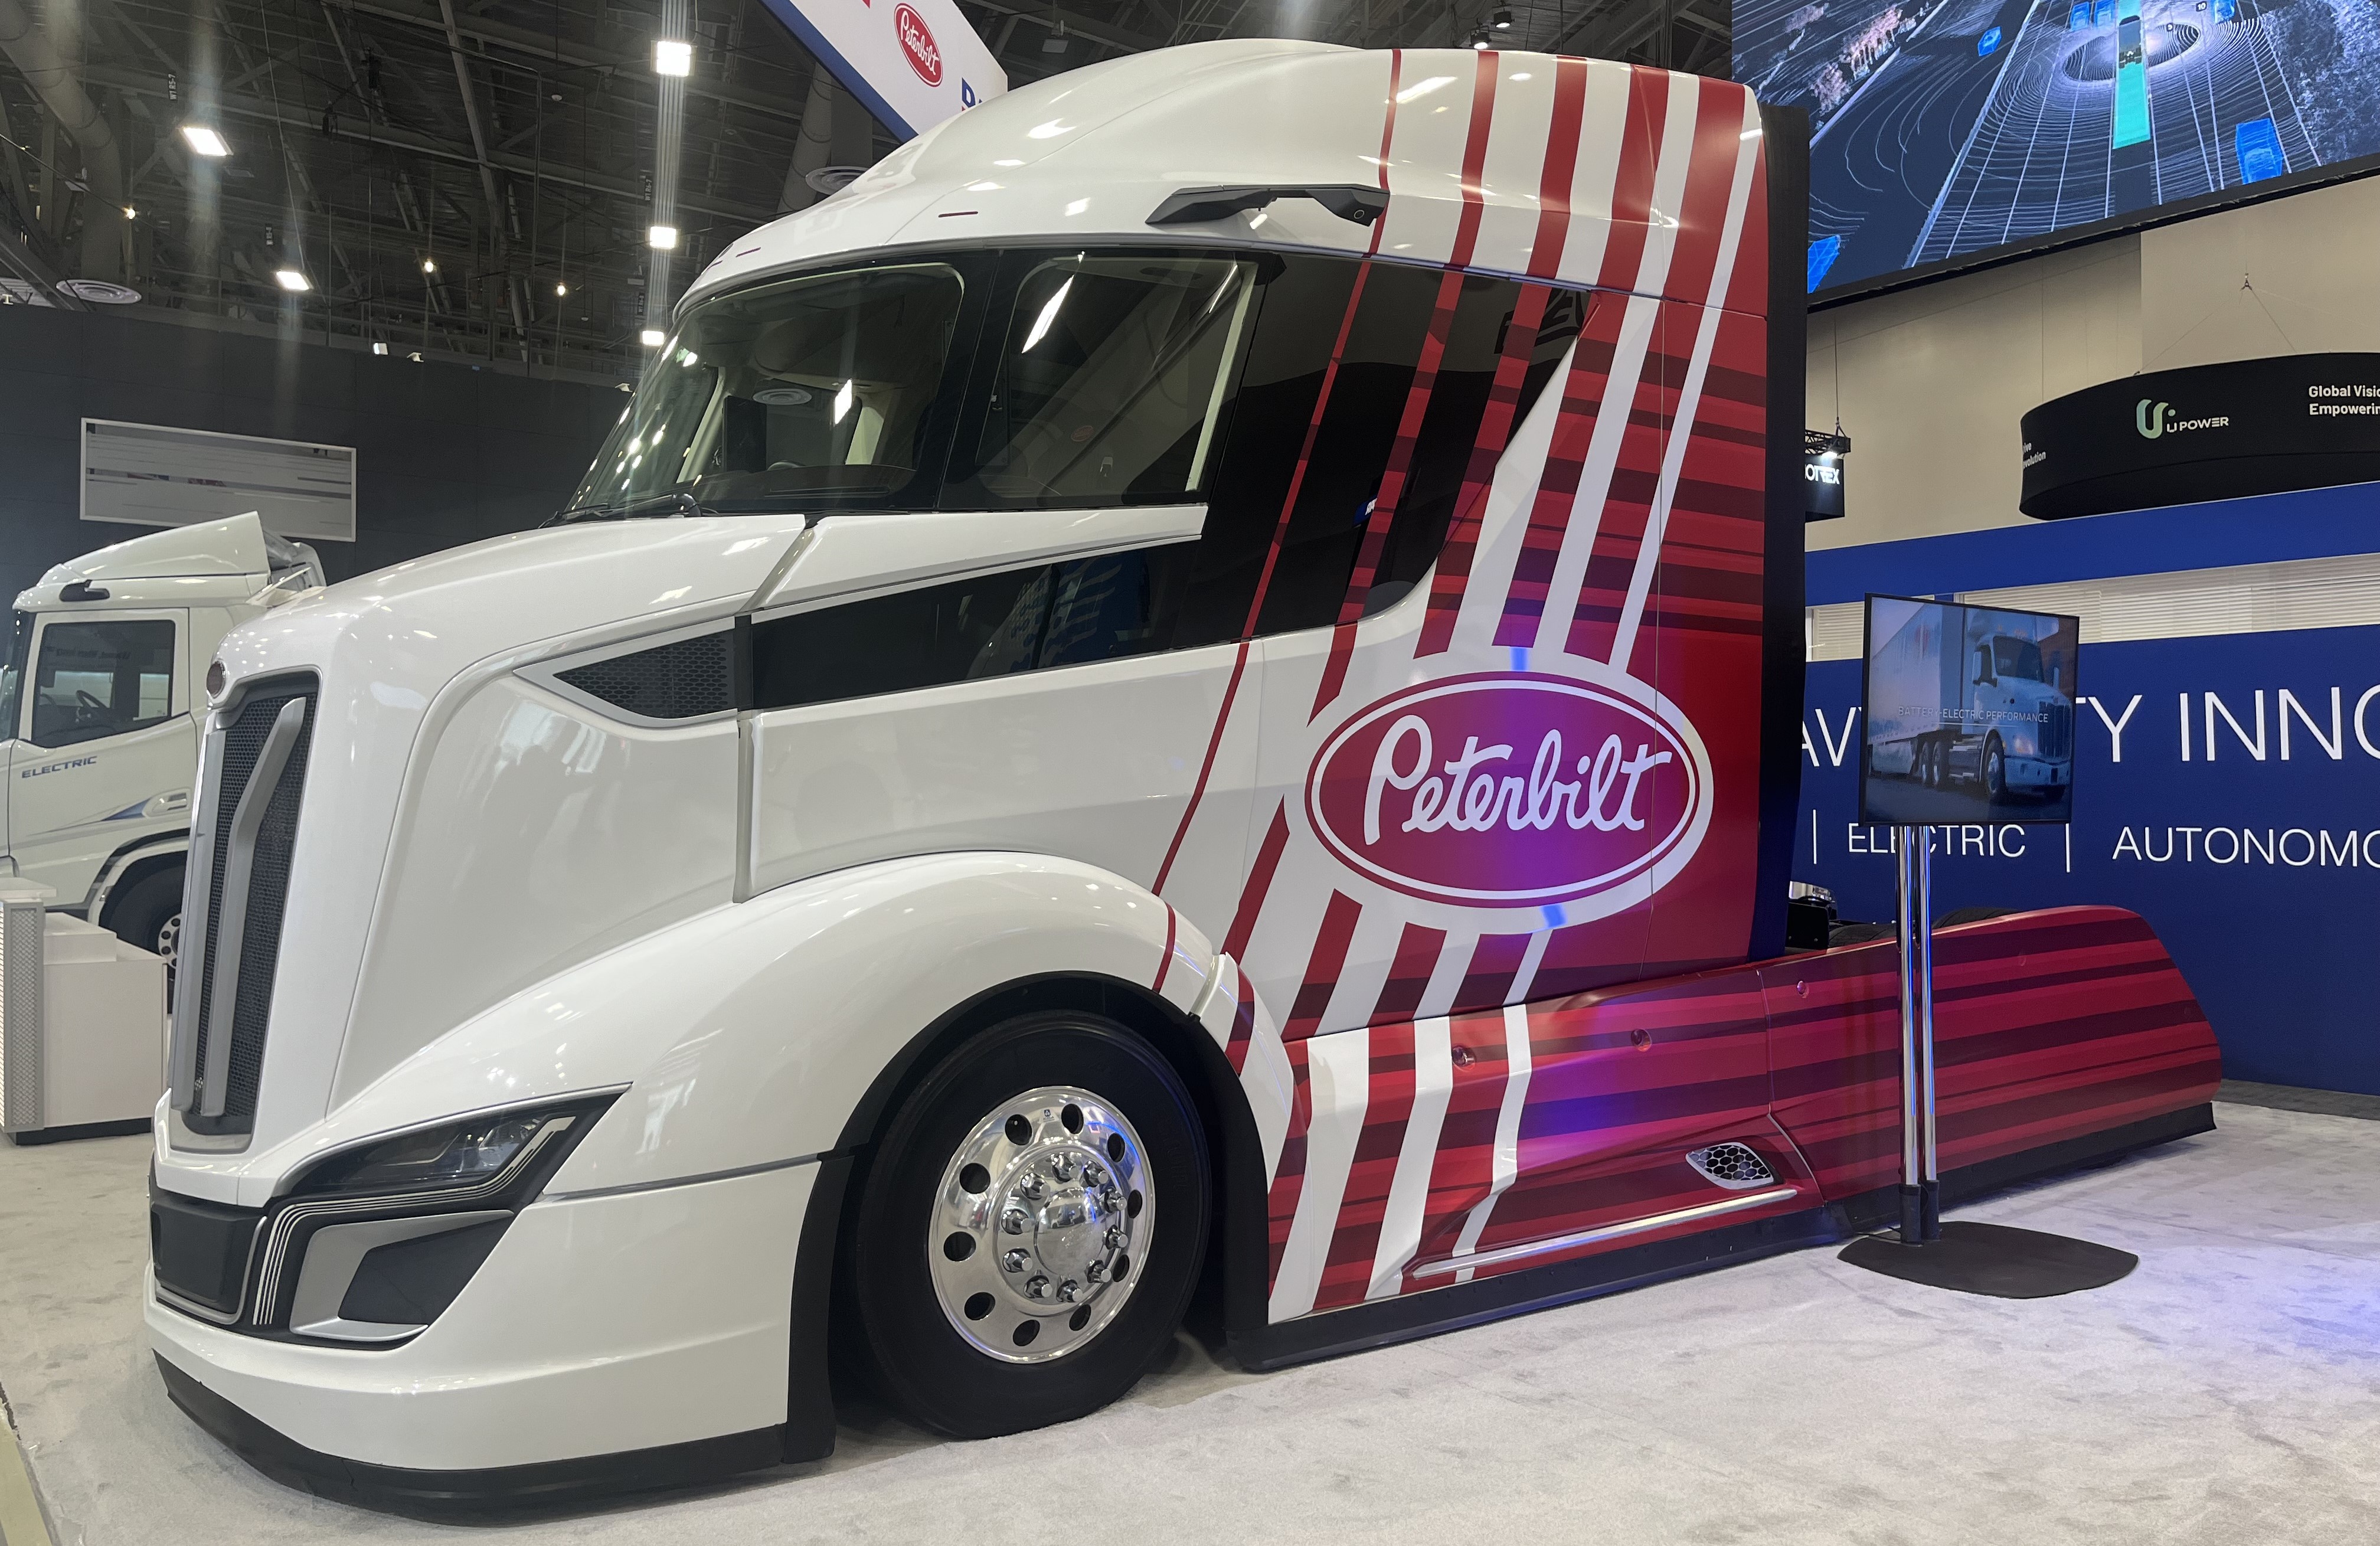 Peterbilt showcases its new Super Truck